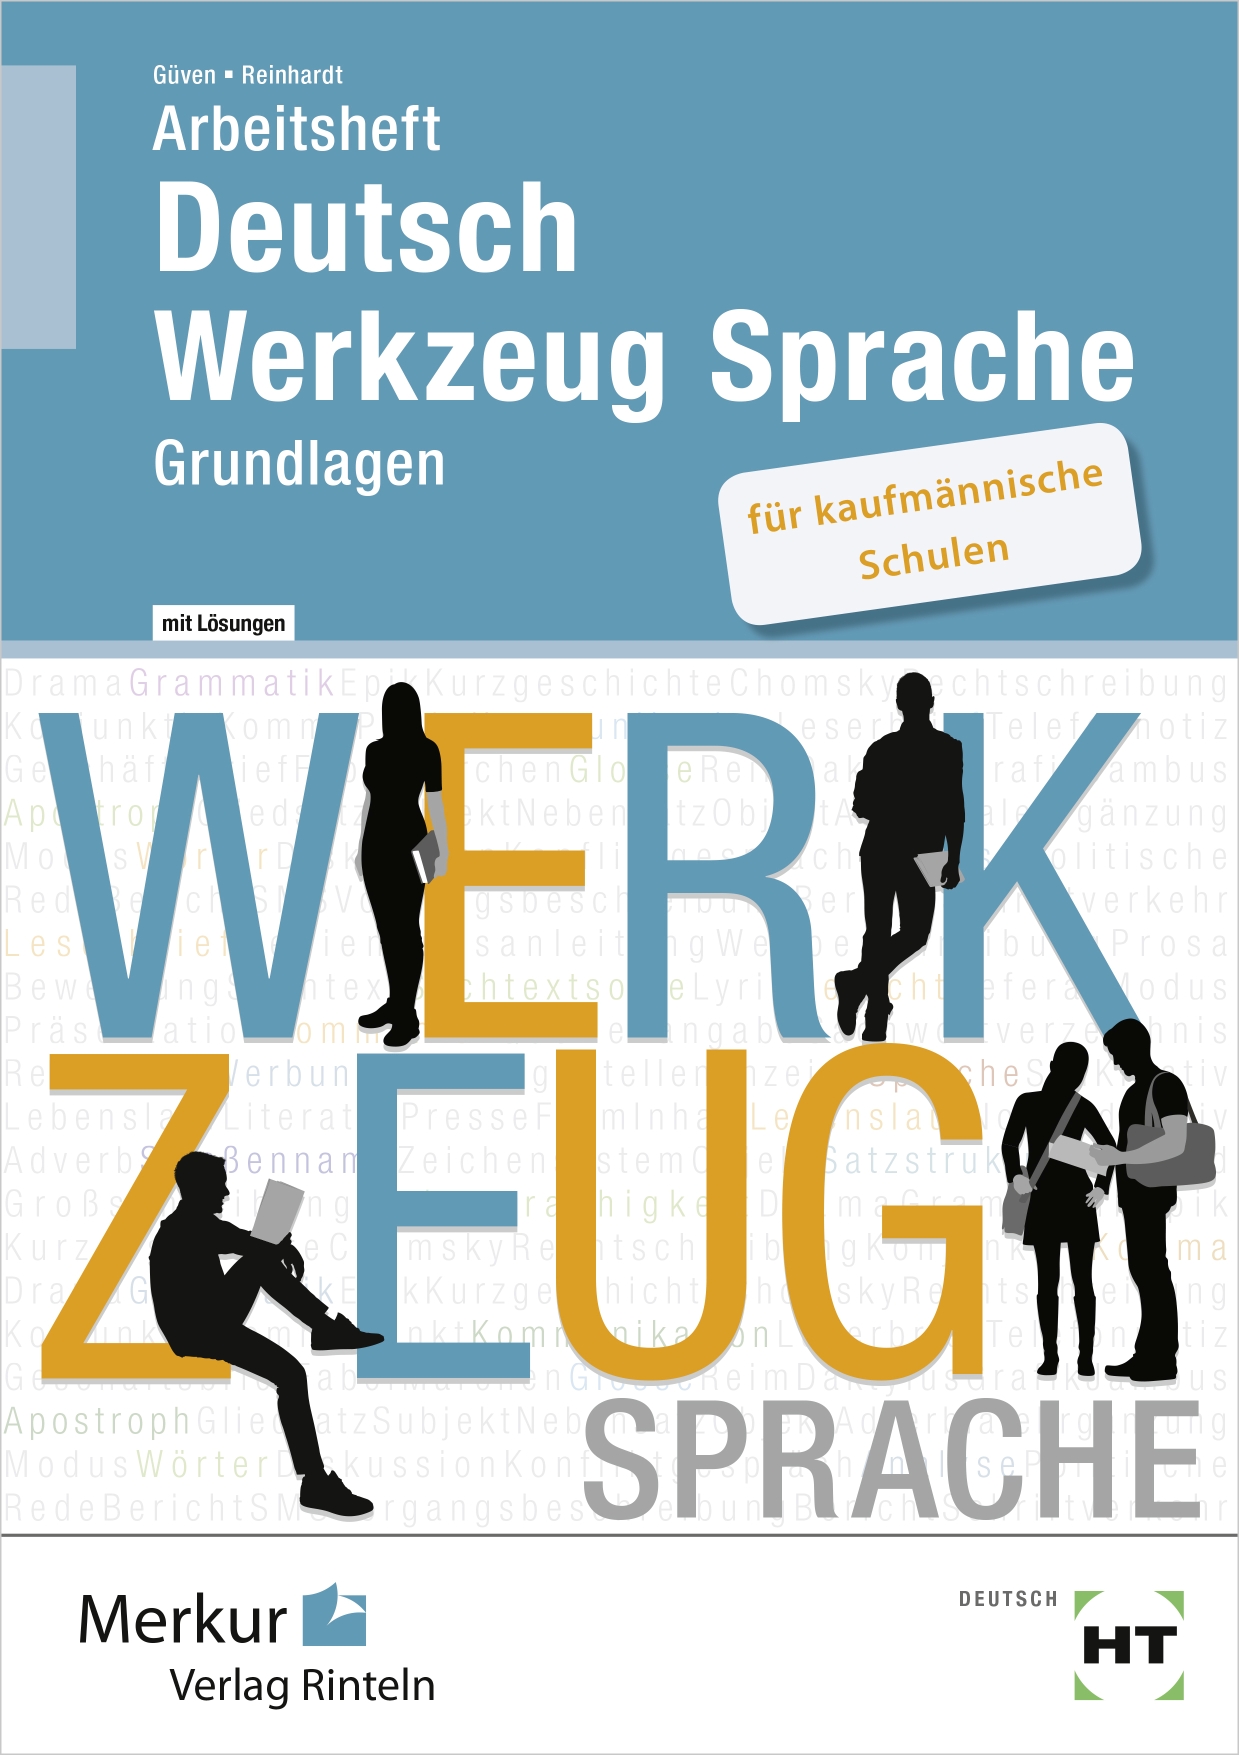 Arbeitsheft Deutsch - Werkzeug Sprache für kaufmännische Schulen Grundlagen - mit Lösungen